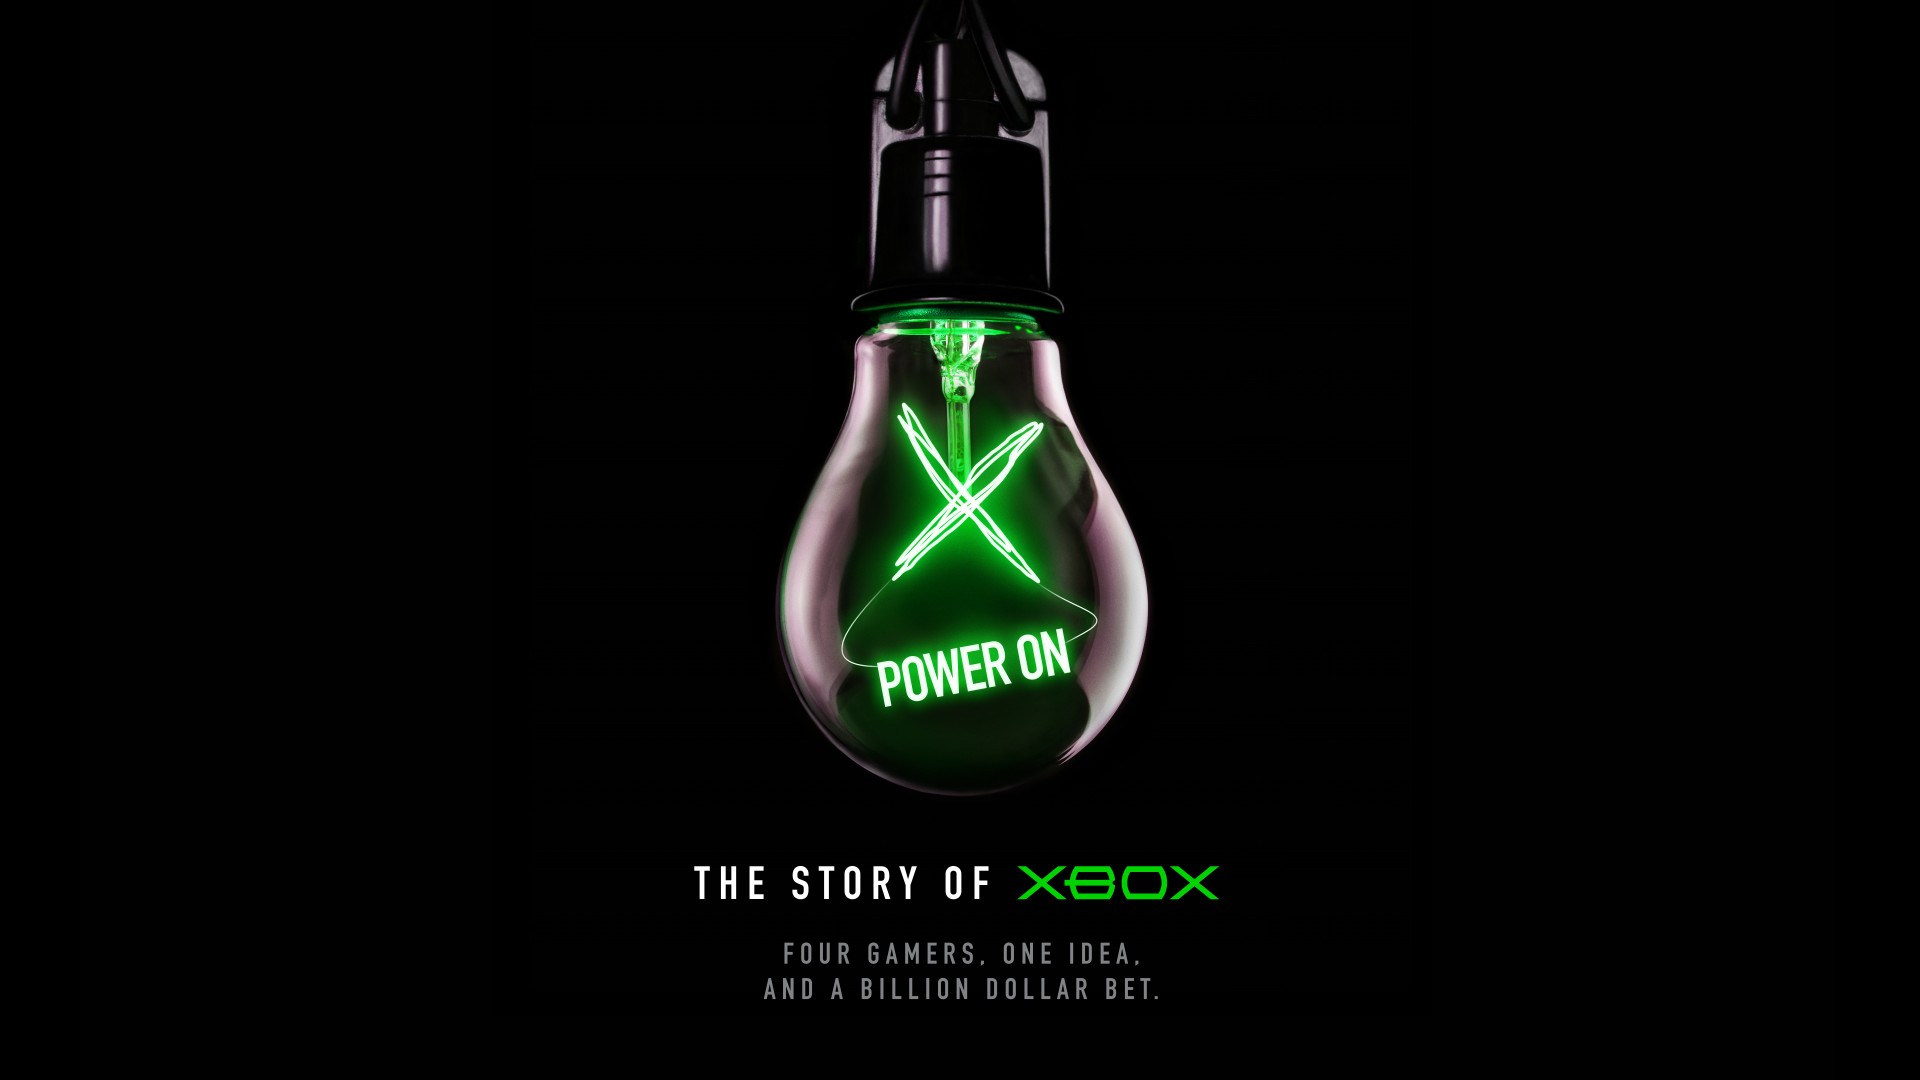 Vous avez voté, le “Mini Frigo” Xbox Series X devient une réalité - Xbox  Wire en Francais